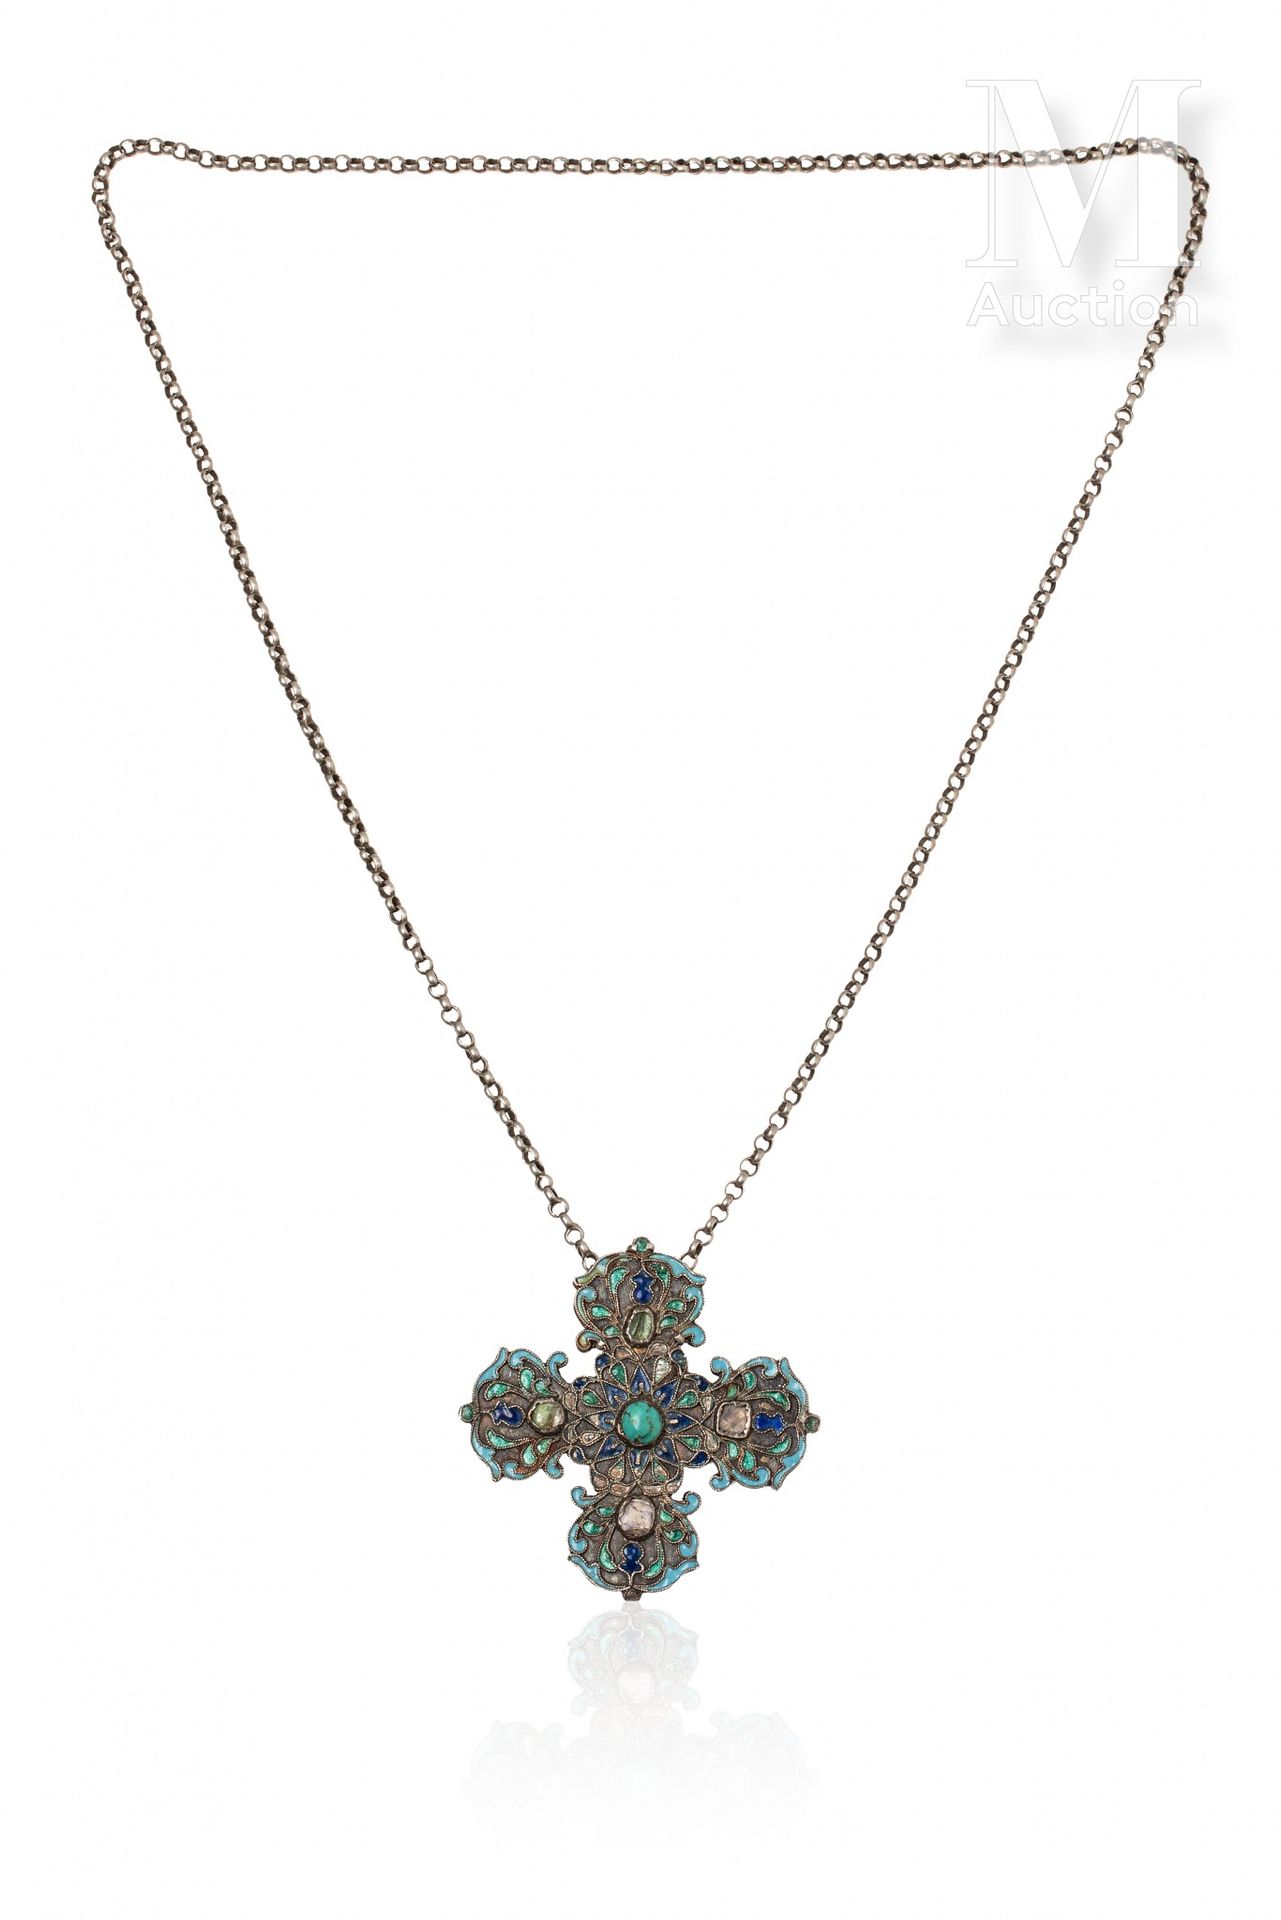 Croix pendentif 
银质八十万分之一，蓝色和绿色色调的掐丝珐琅多色装饰，镶嵌有凸圆形绿松石和彩色宝石。有了它的链接链。 

希腊，19世纪初。

&hellip;